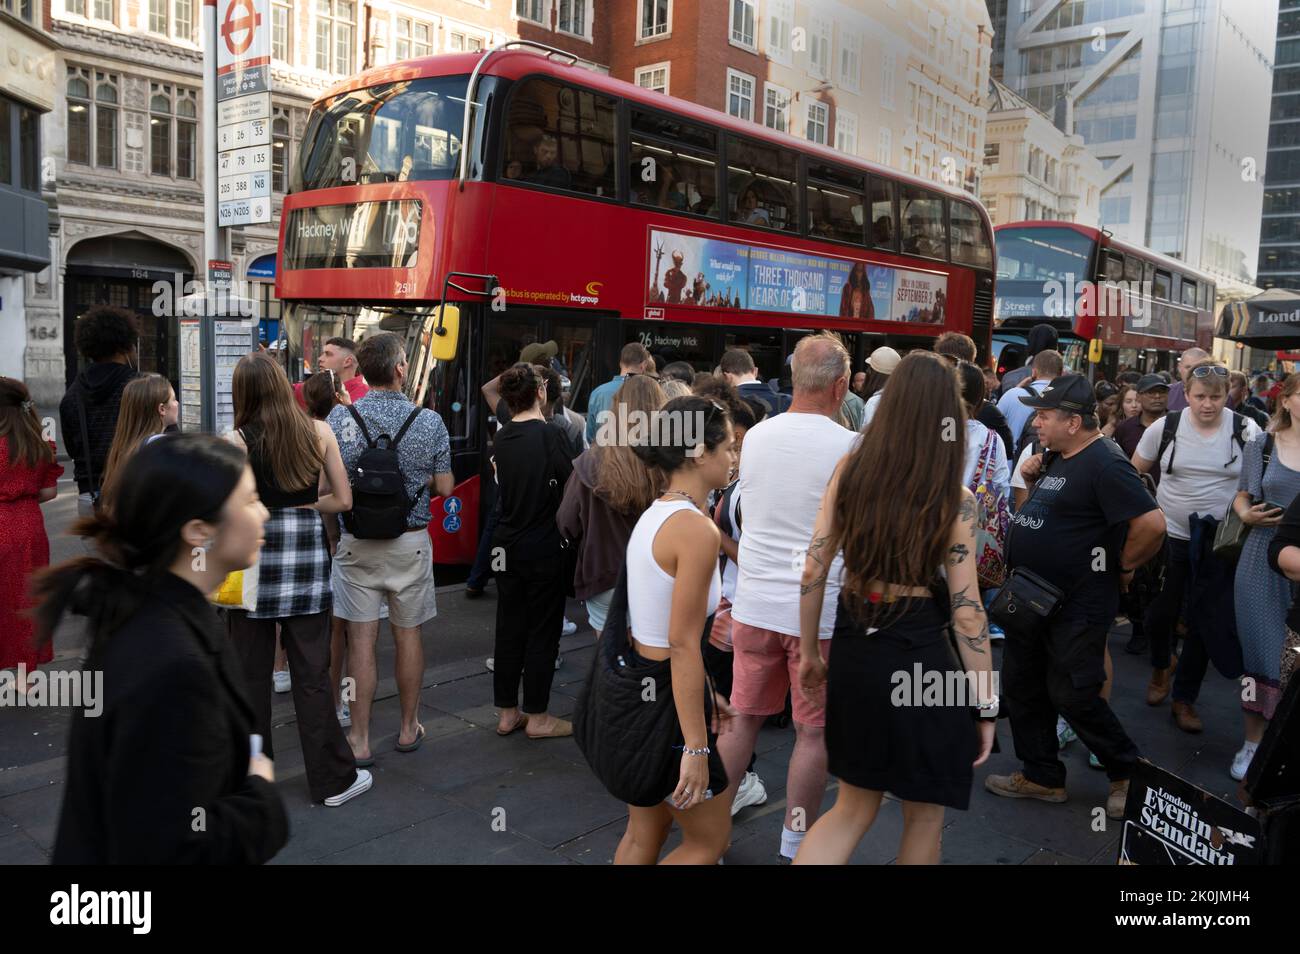 Londres, Inglaterra. Liverpool Street durante una huelga en el metro y el ferrocarril. Los pasajeros esperan en una parada de autobús. Foto de stock